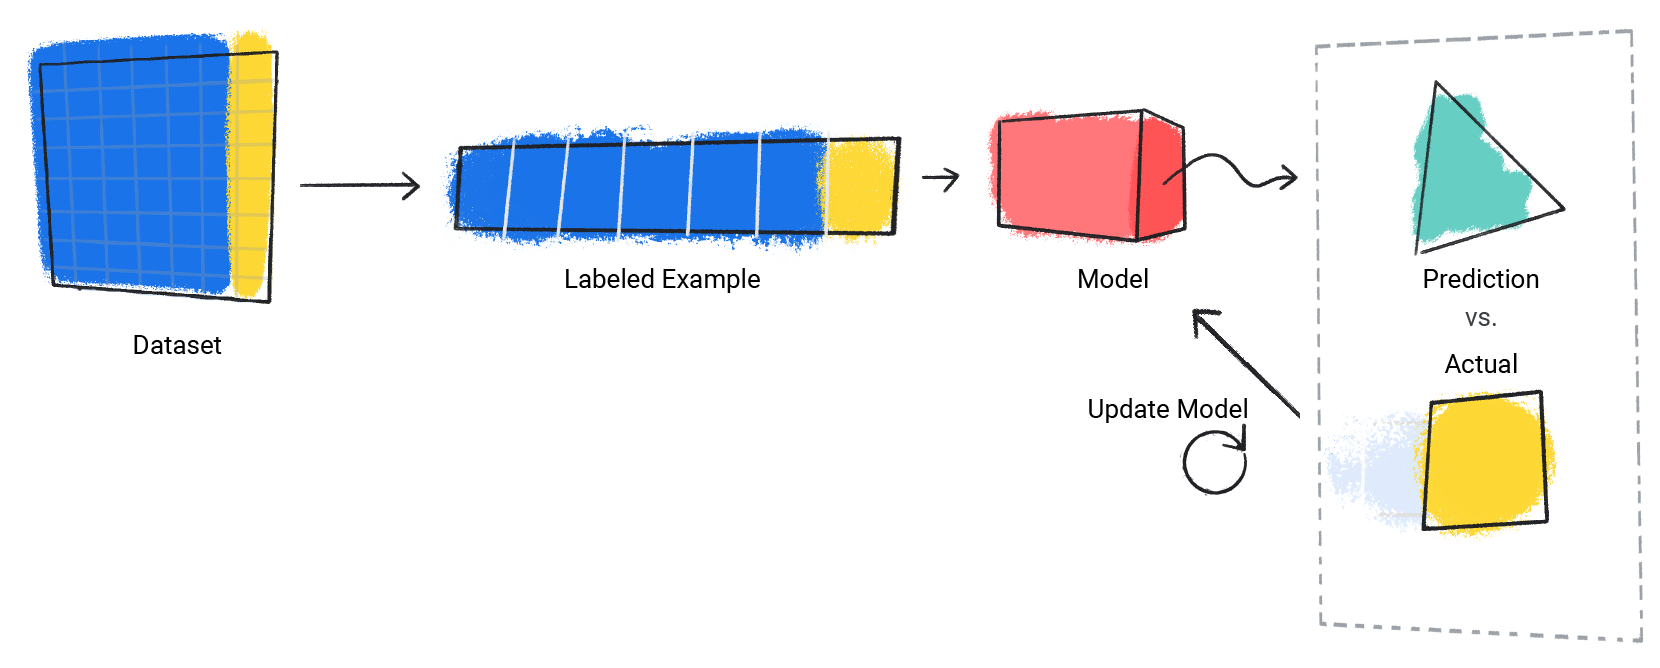 Uma imagem de um modelo repetindo o processo de previsão em relação ao valor real.